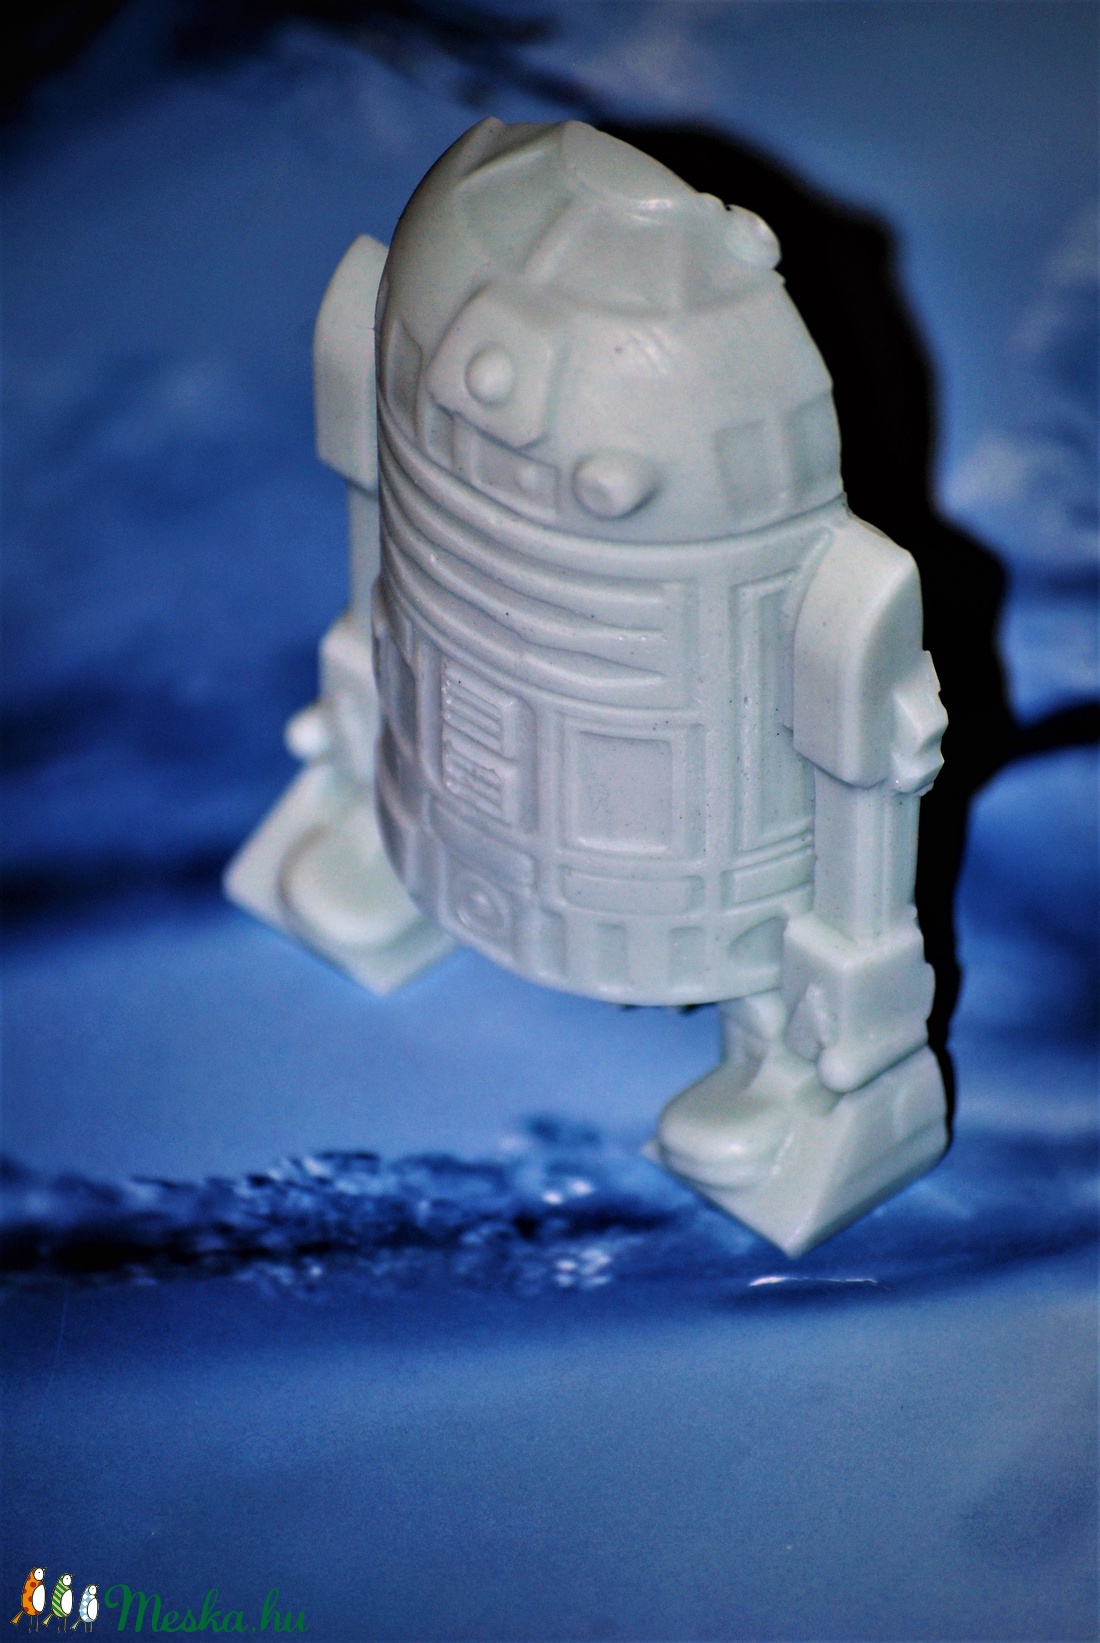 Vegán egyedi Csillagok háborúja Star Wars R2D2 szappan ajándék szülinapra névnapra normál száraz zsíros bőrre arcra - szépségápolás - szappan & fürdés - kézműves szappan - Meska.hu